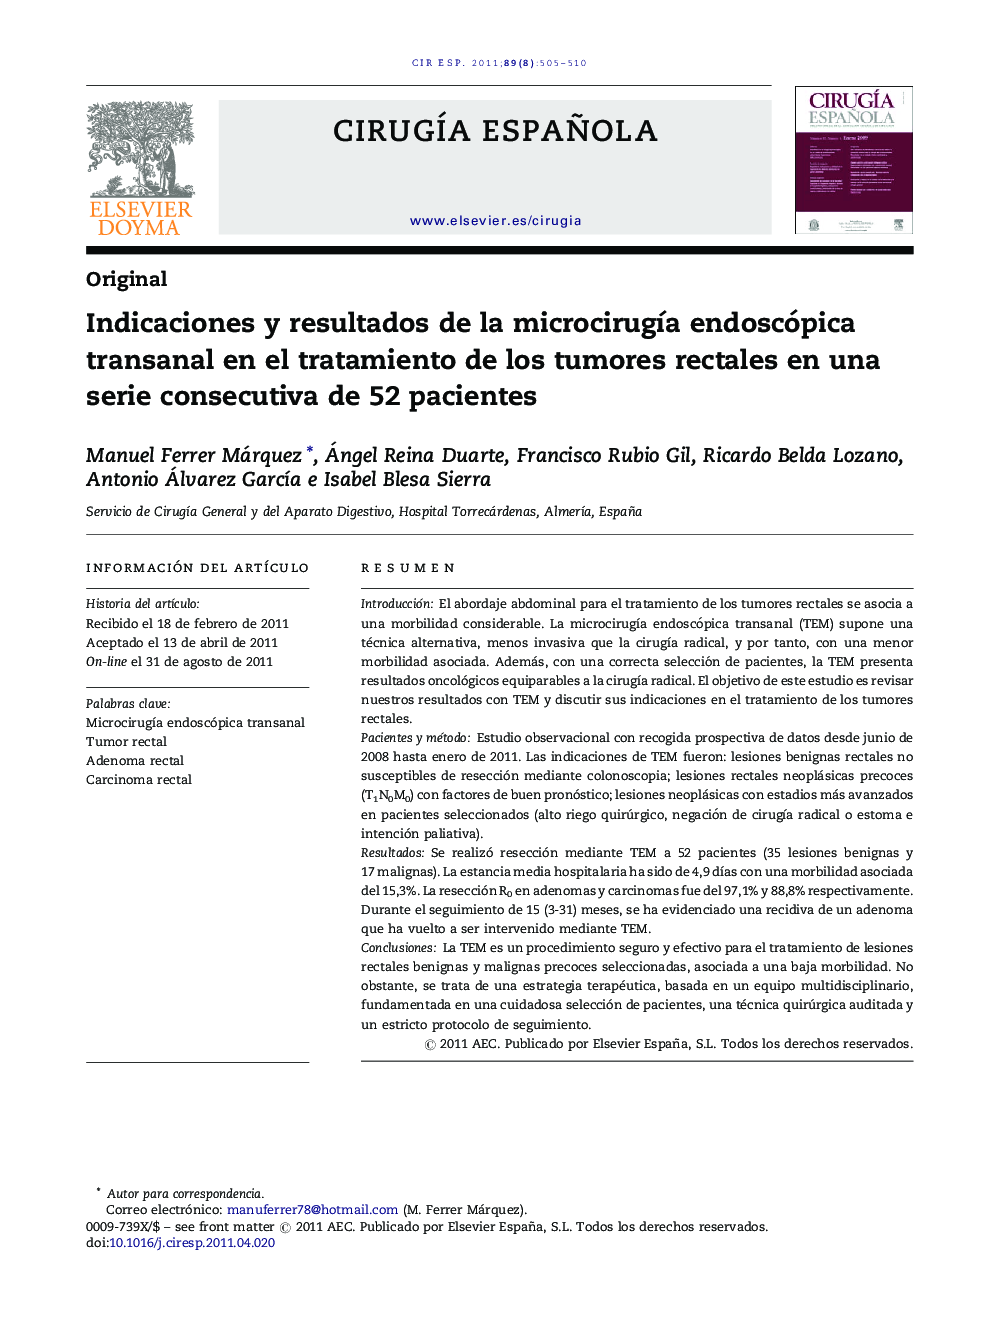 Indicaciones y resultados de la microcirugÃ­a endoscópica transanal en el tratamiento de los tumores rectales en una serie consecutiva de 52 pacientes